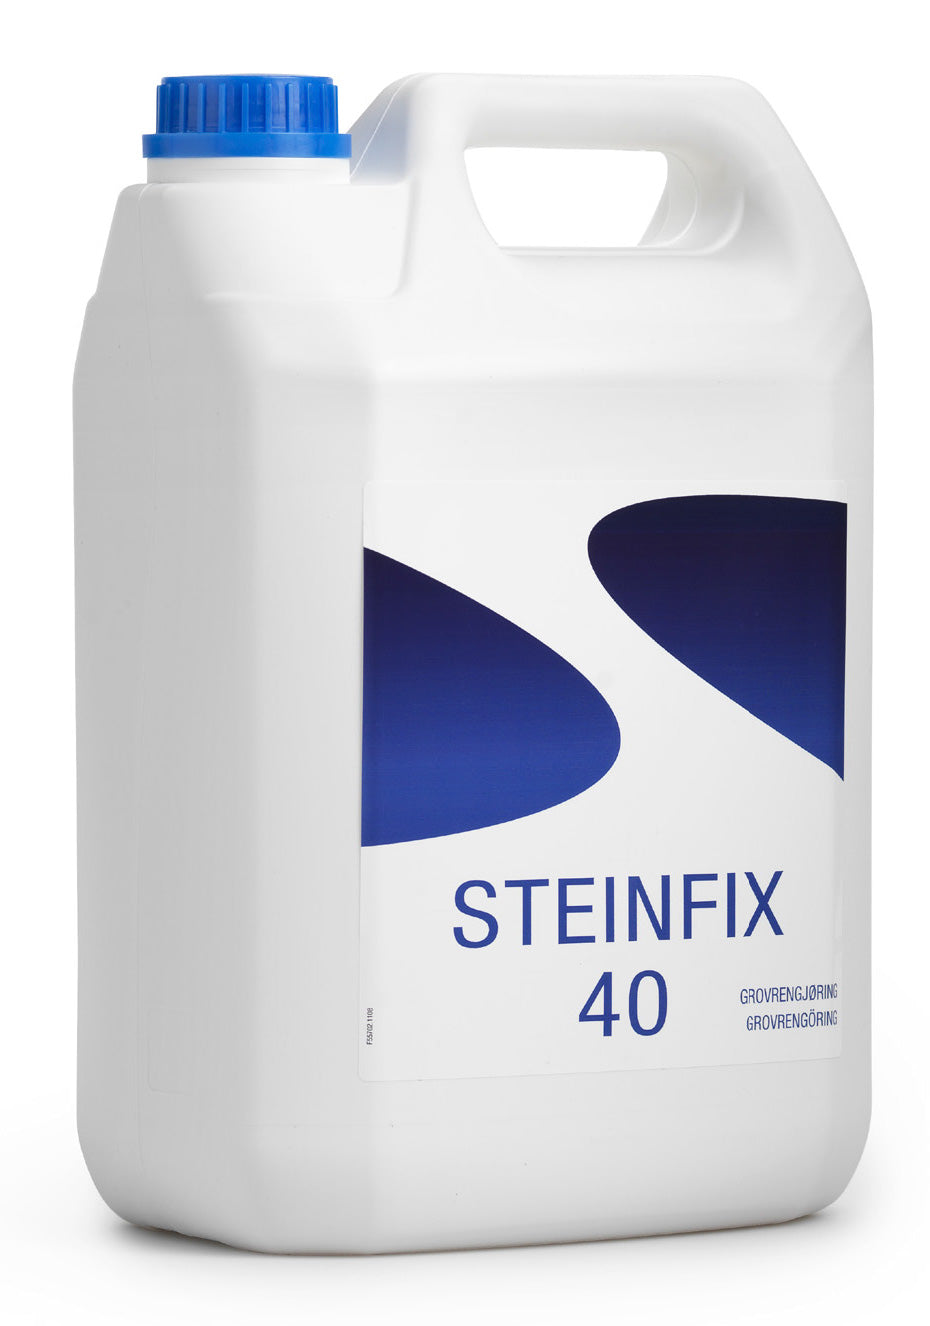 Steinfix 40, grovrengöring